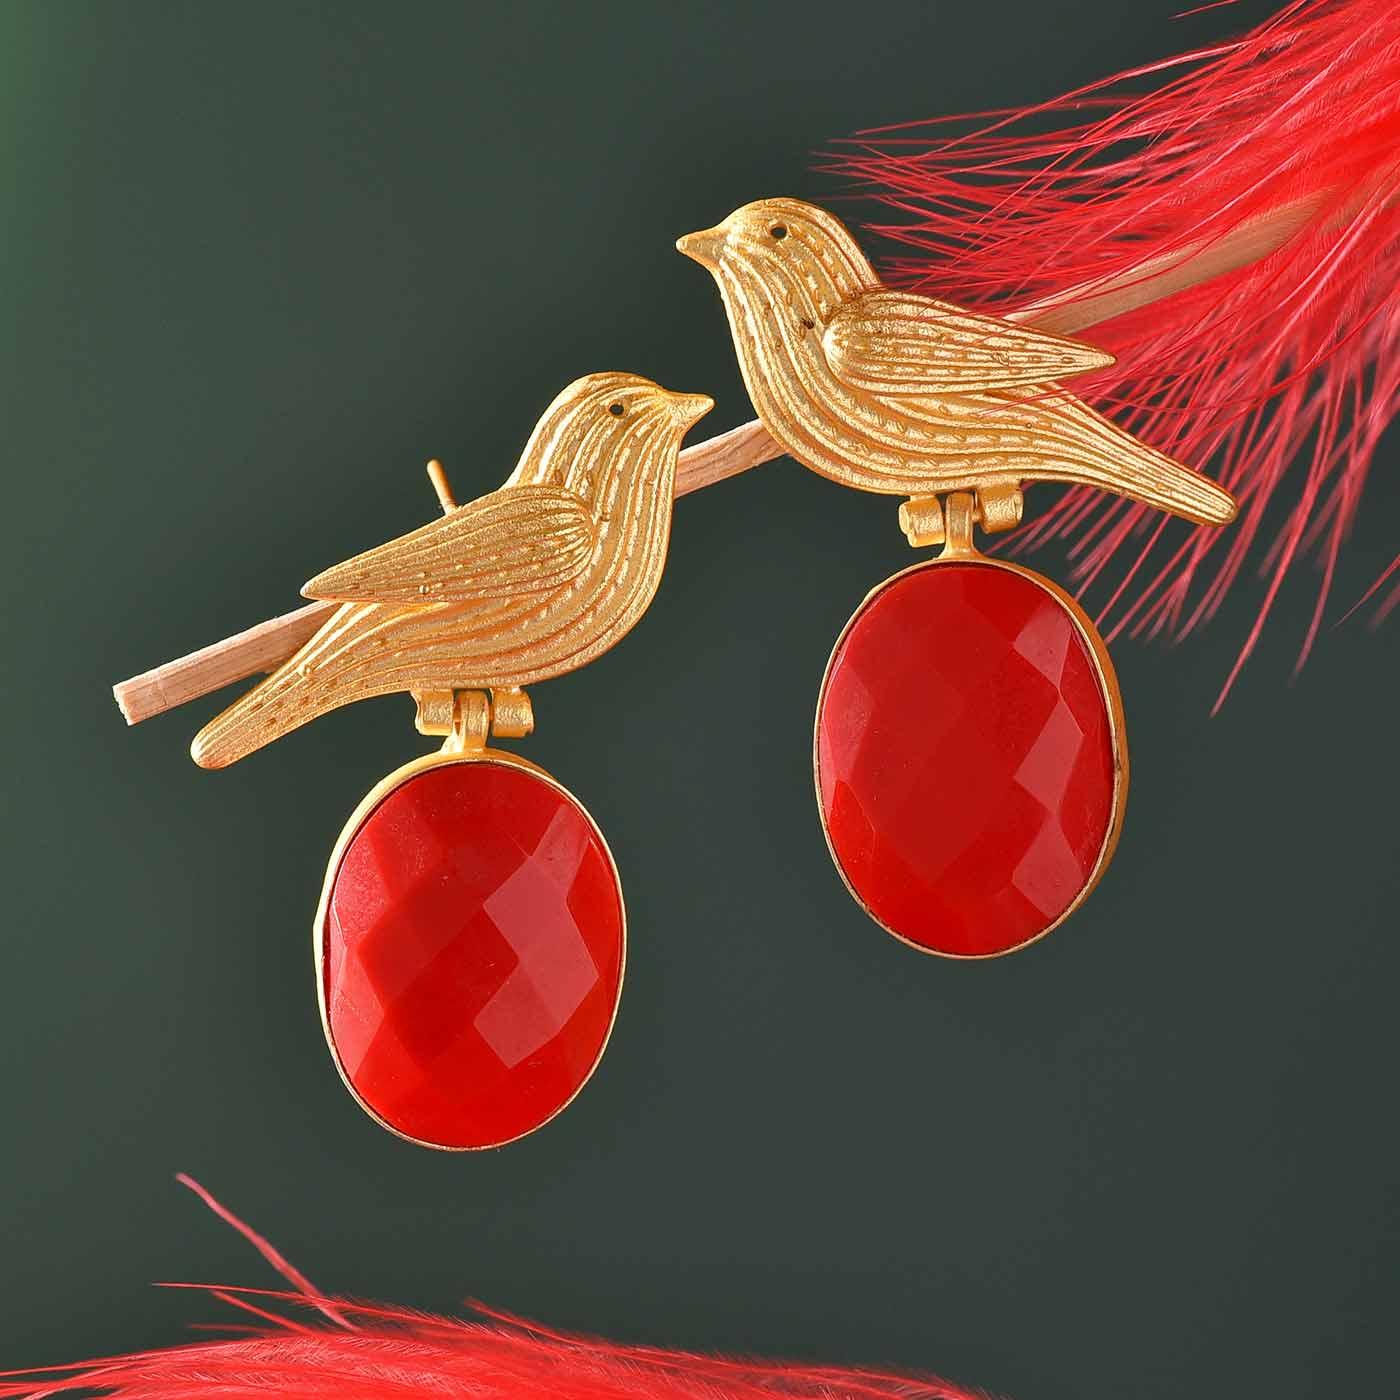 BrassMoti GoldenRed Beautiful Designer Latest Jhumki Kundan Earrings For  Women And Girls